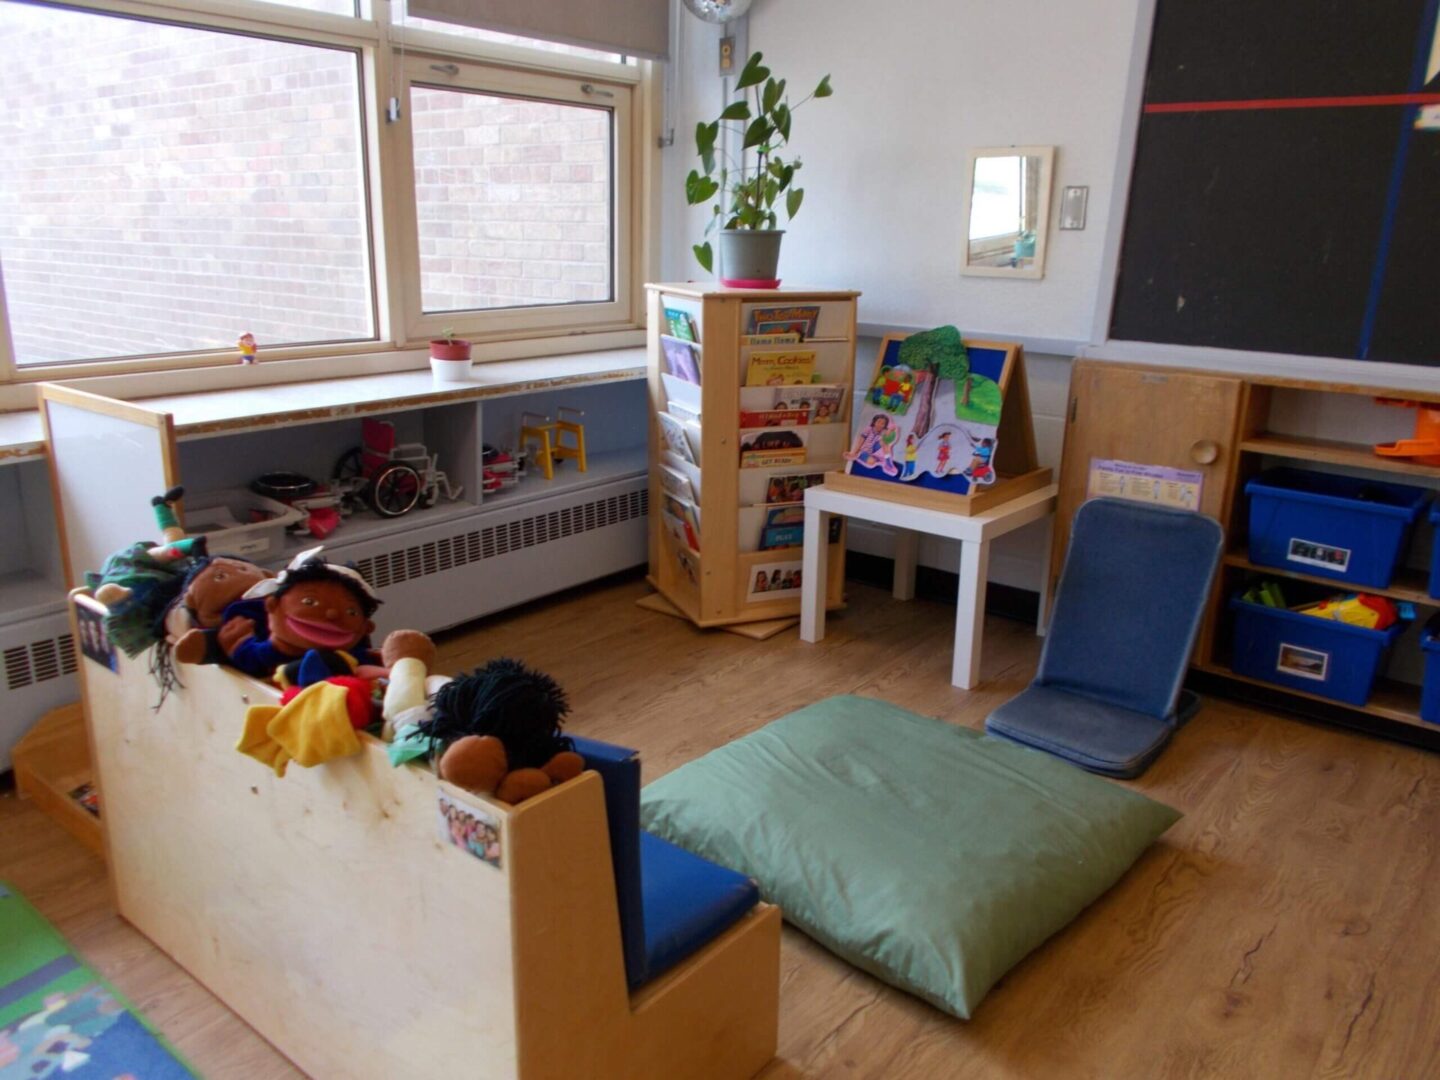 Preschool 1 room images